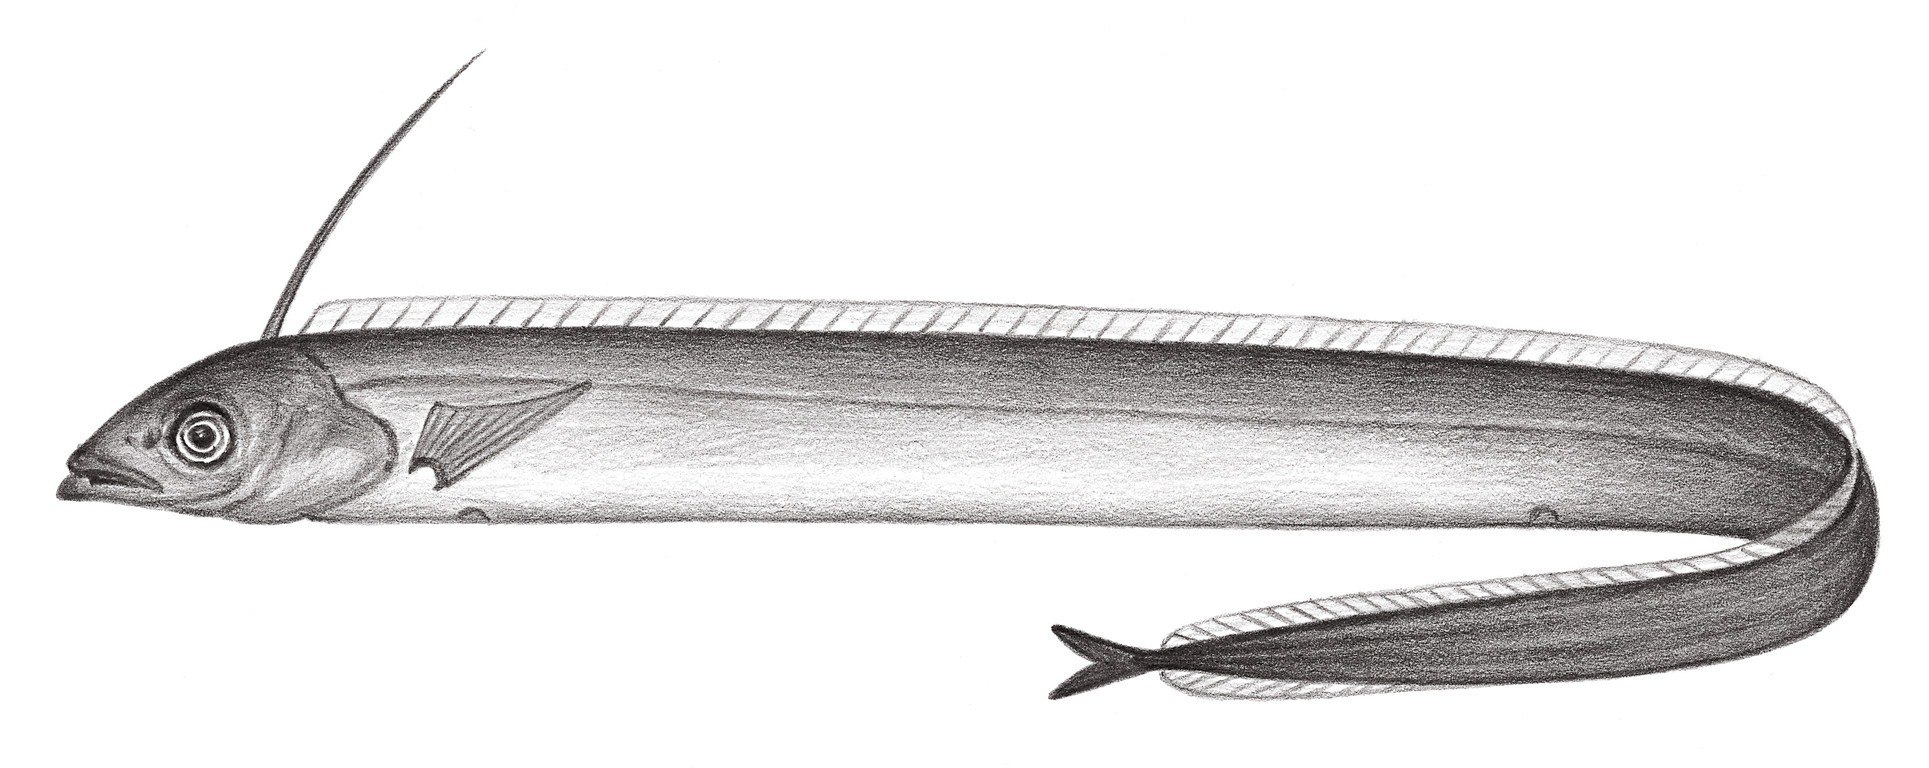 2335.	卜氏深海帶魚 Evoxymetopon poeyi Günther, 1887